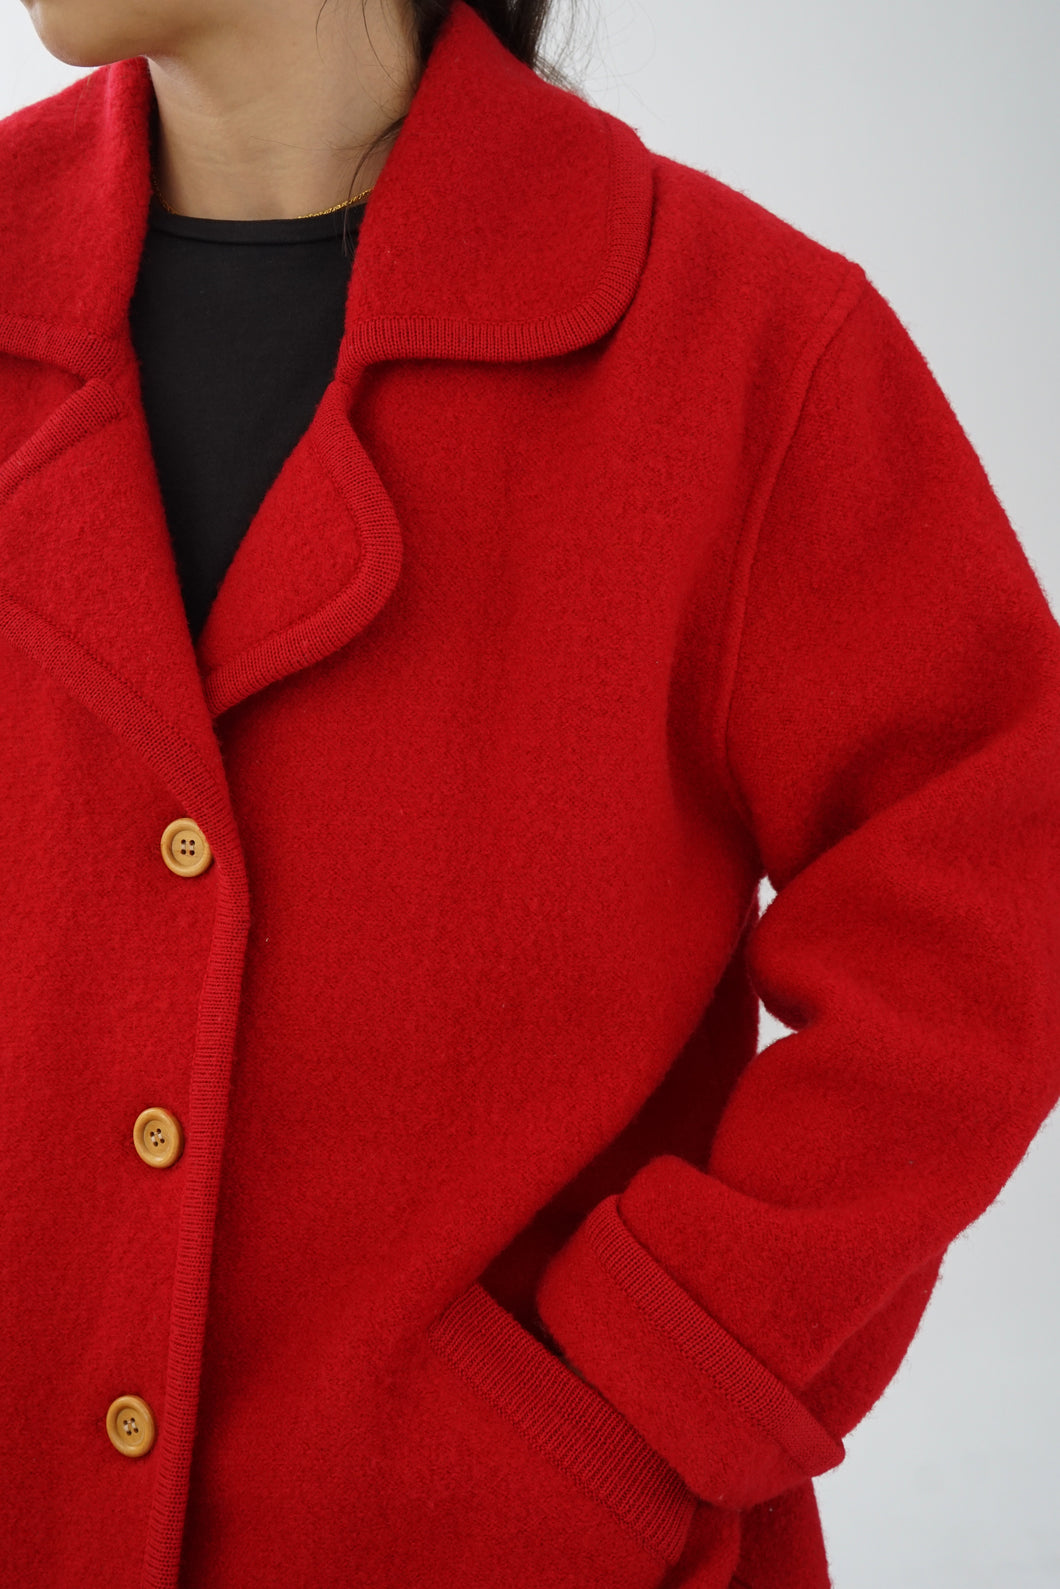 Manteau de printemps en laine Bernardo rouge taille S-M